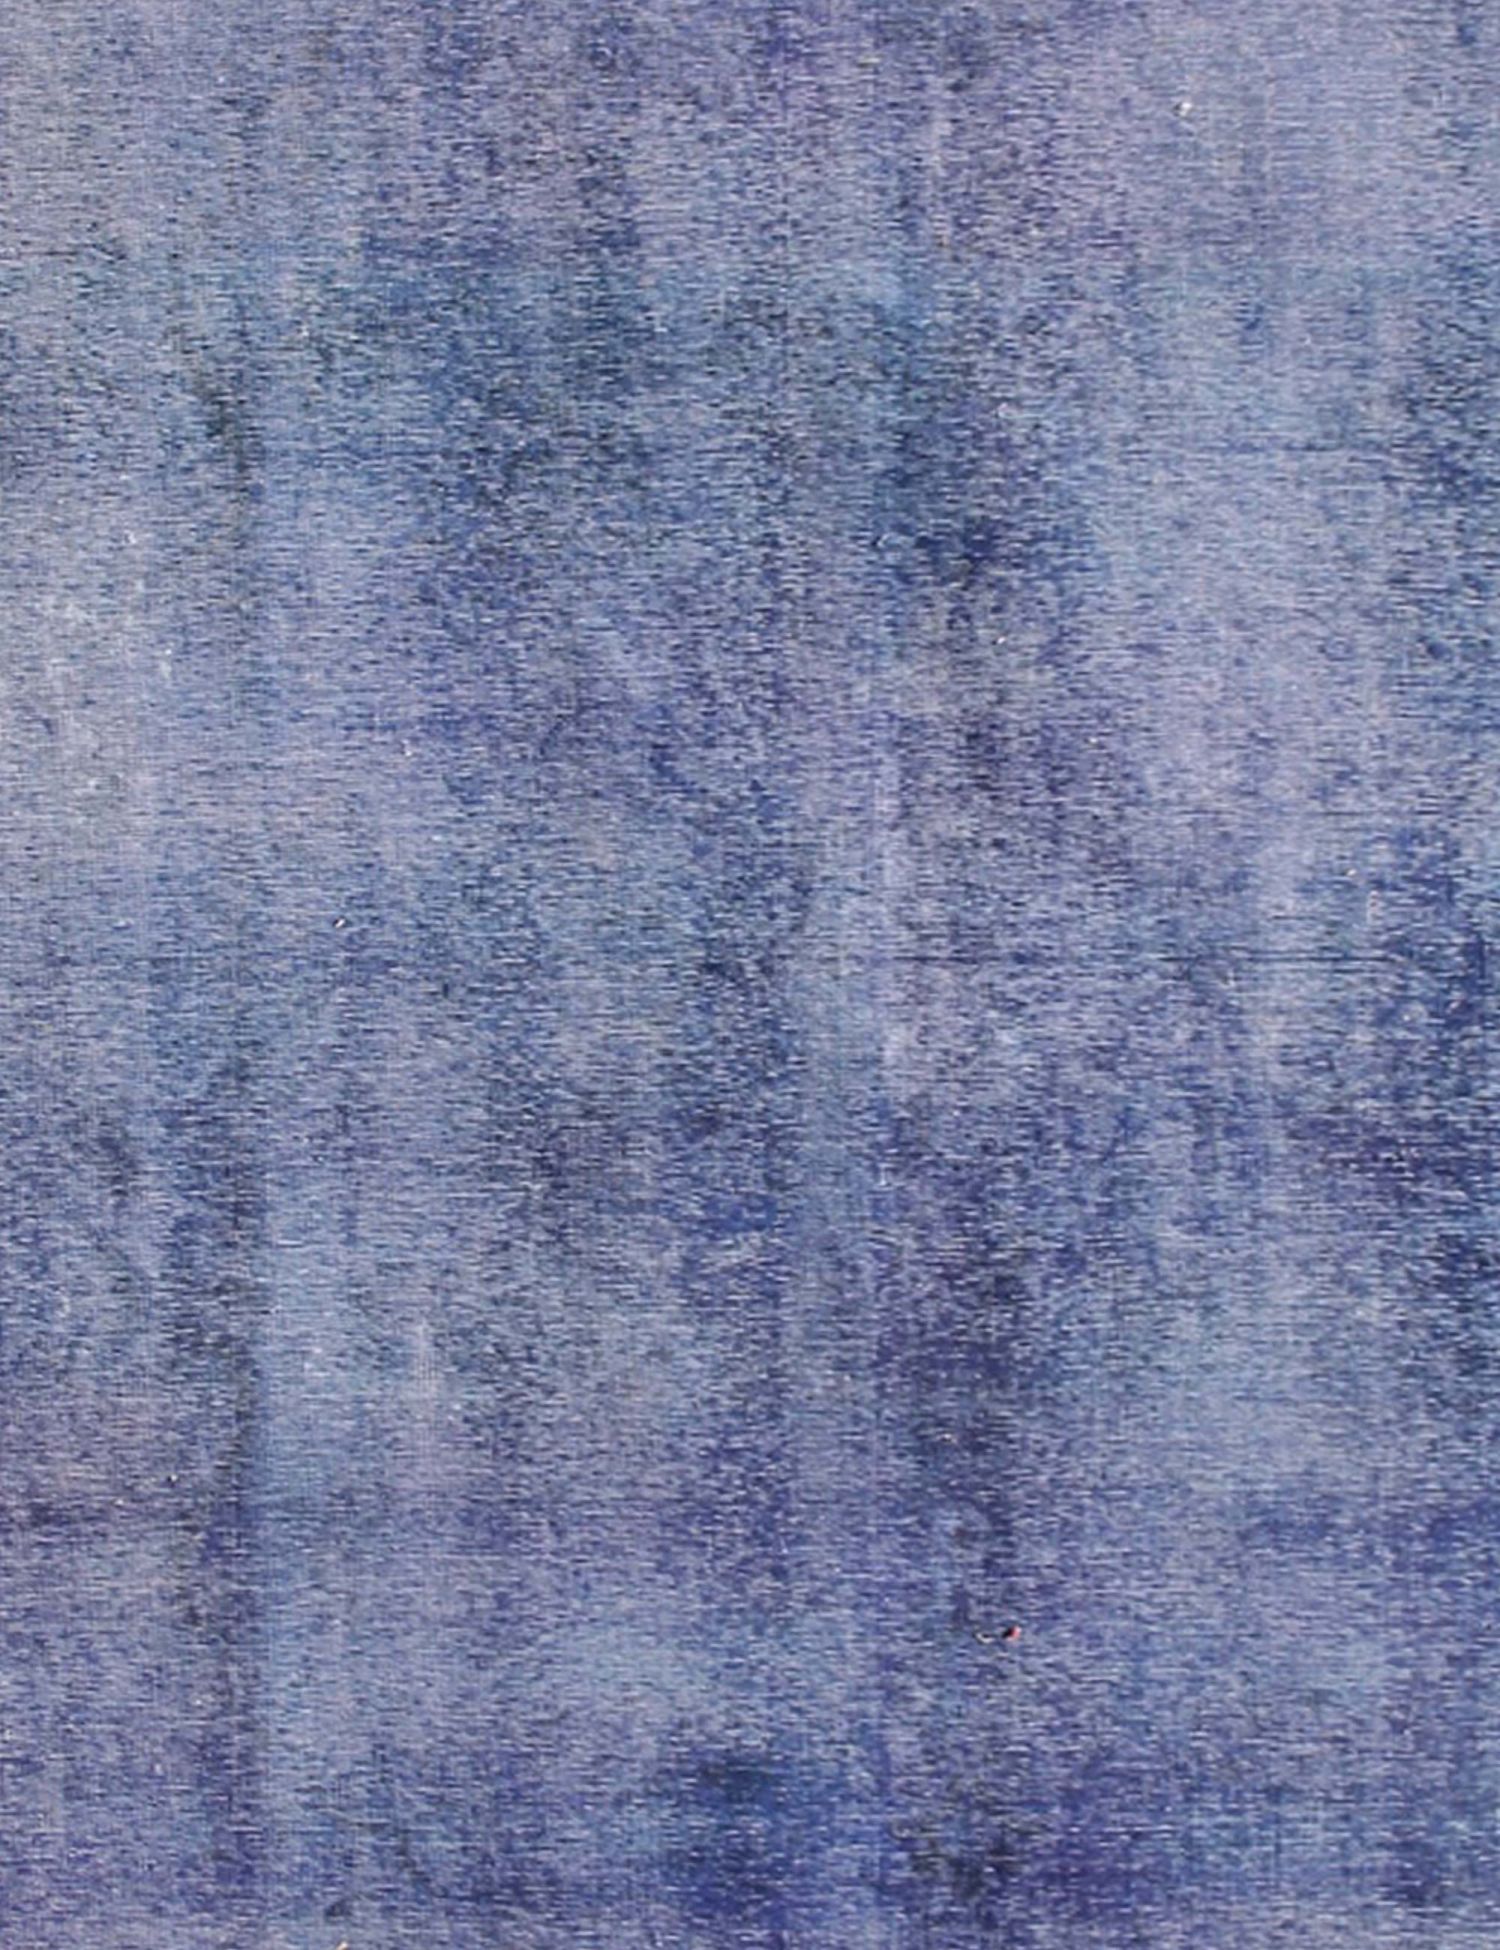 Persischer Vintage Teppich  blau <br/>320 x 200 cm